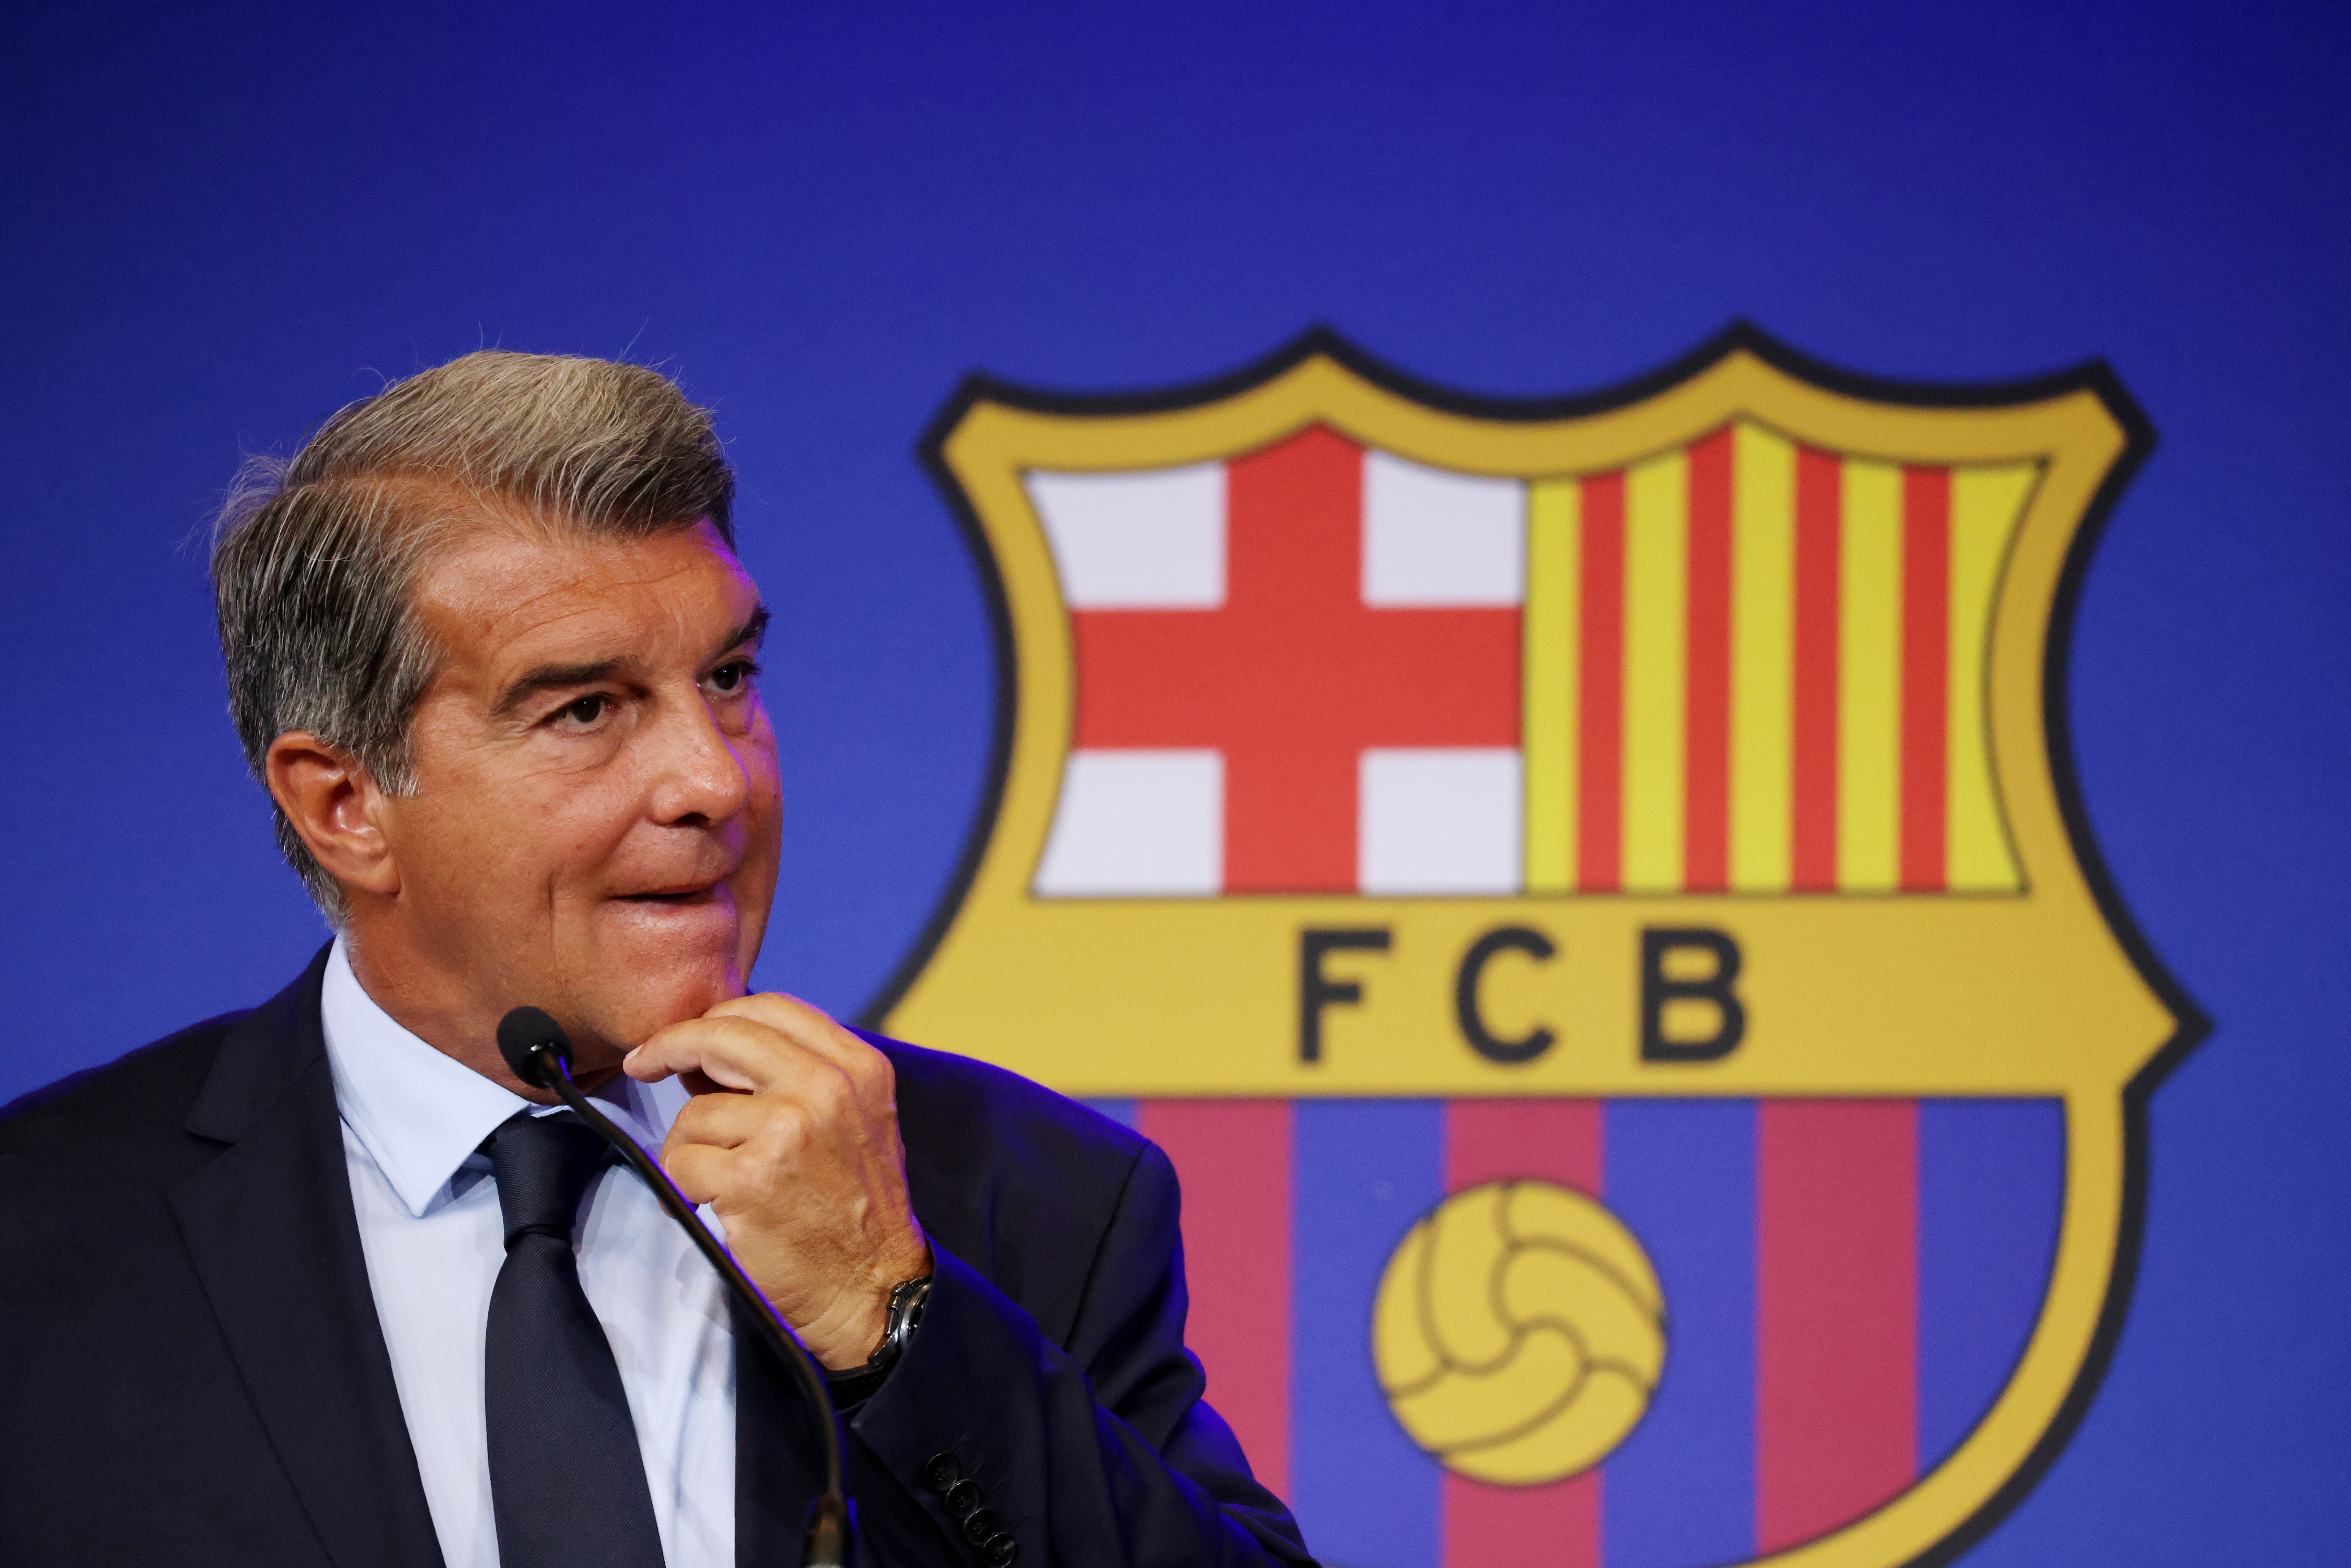 El presidente dijo que el Barcelona podría salirse con la suya con un agujero financiero en 18 meses